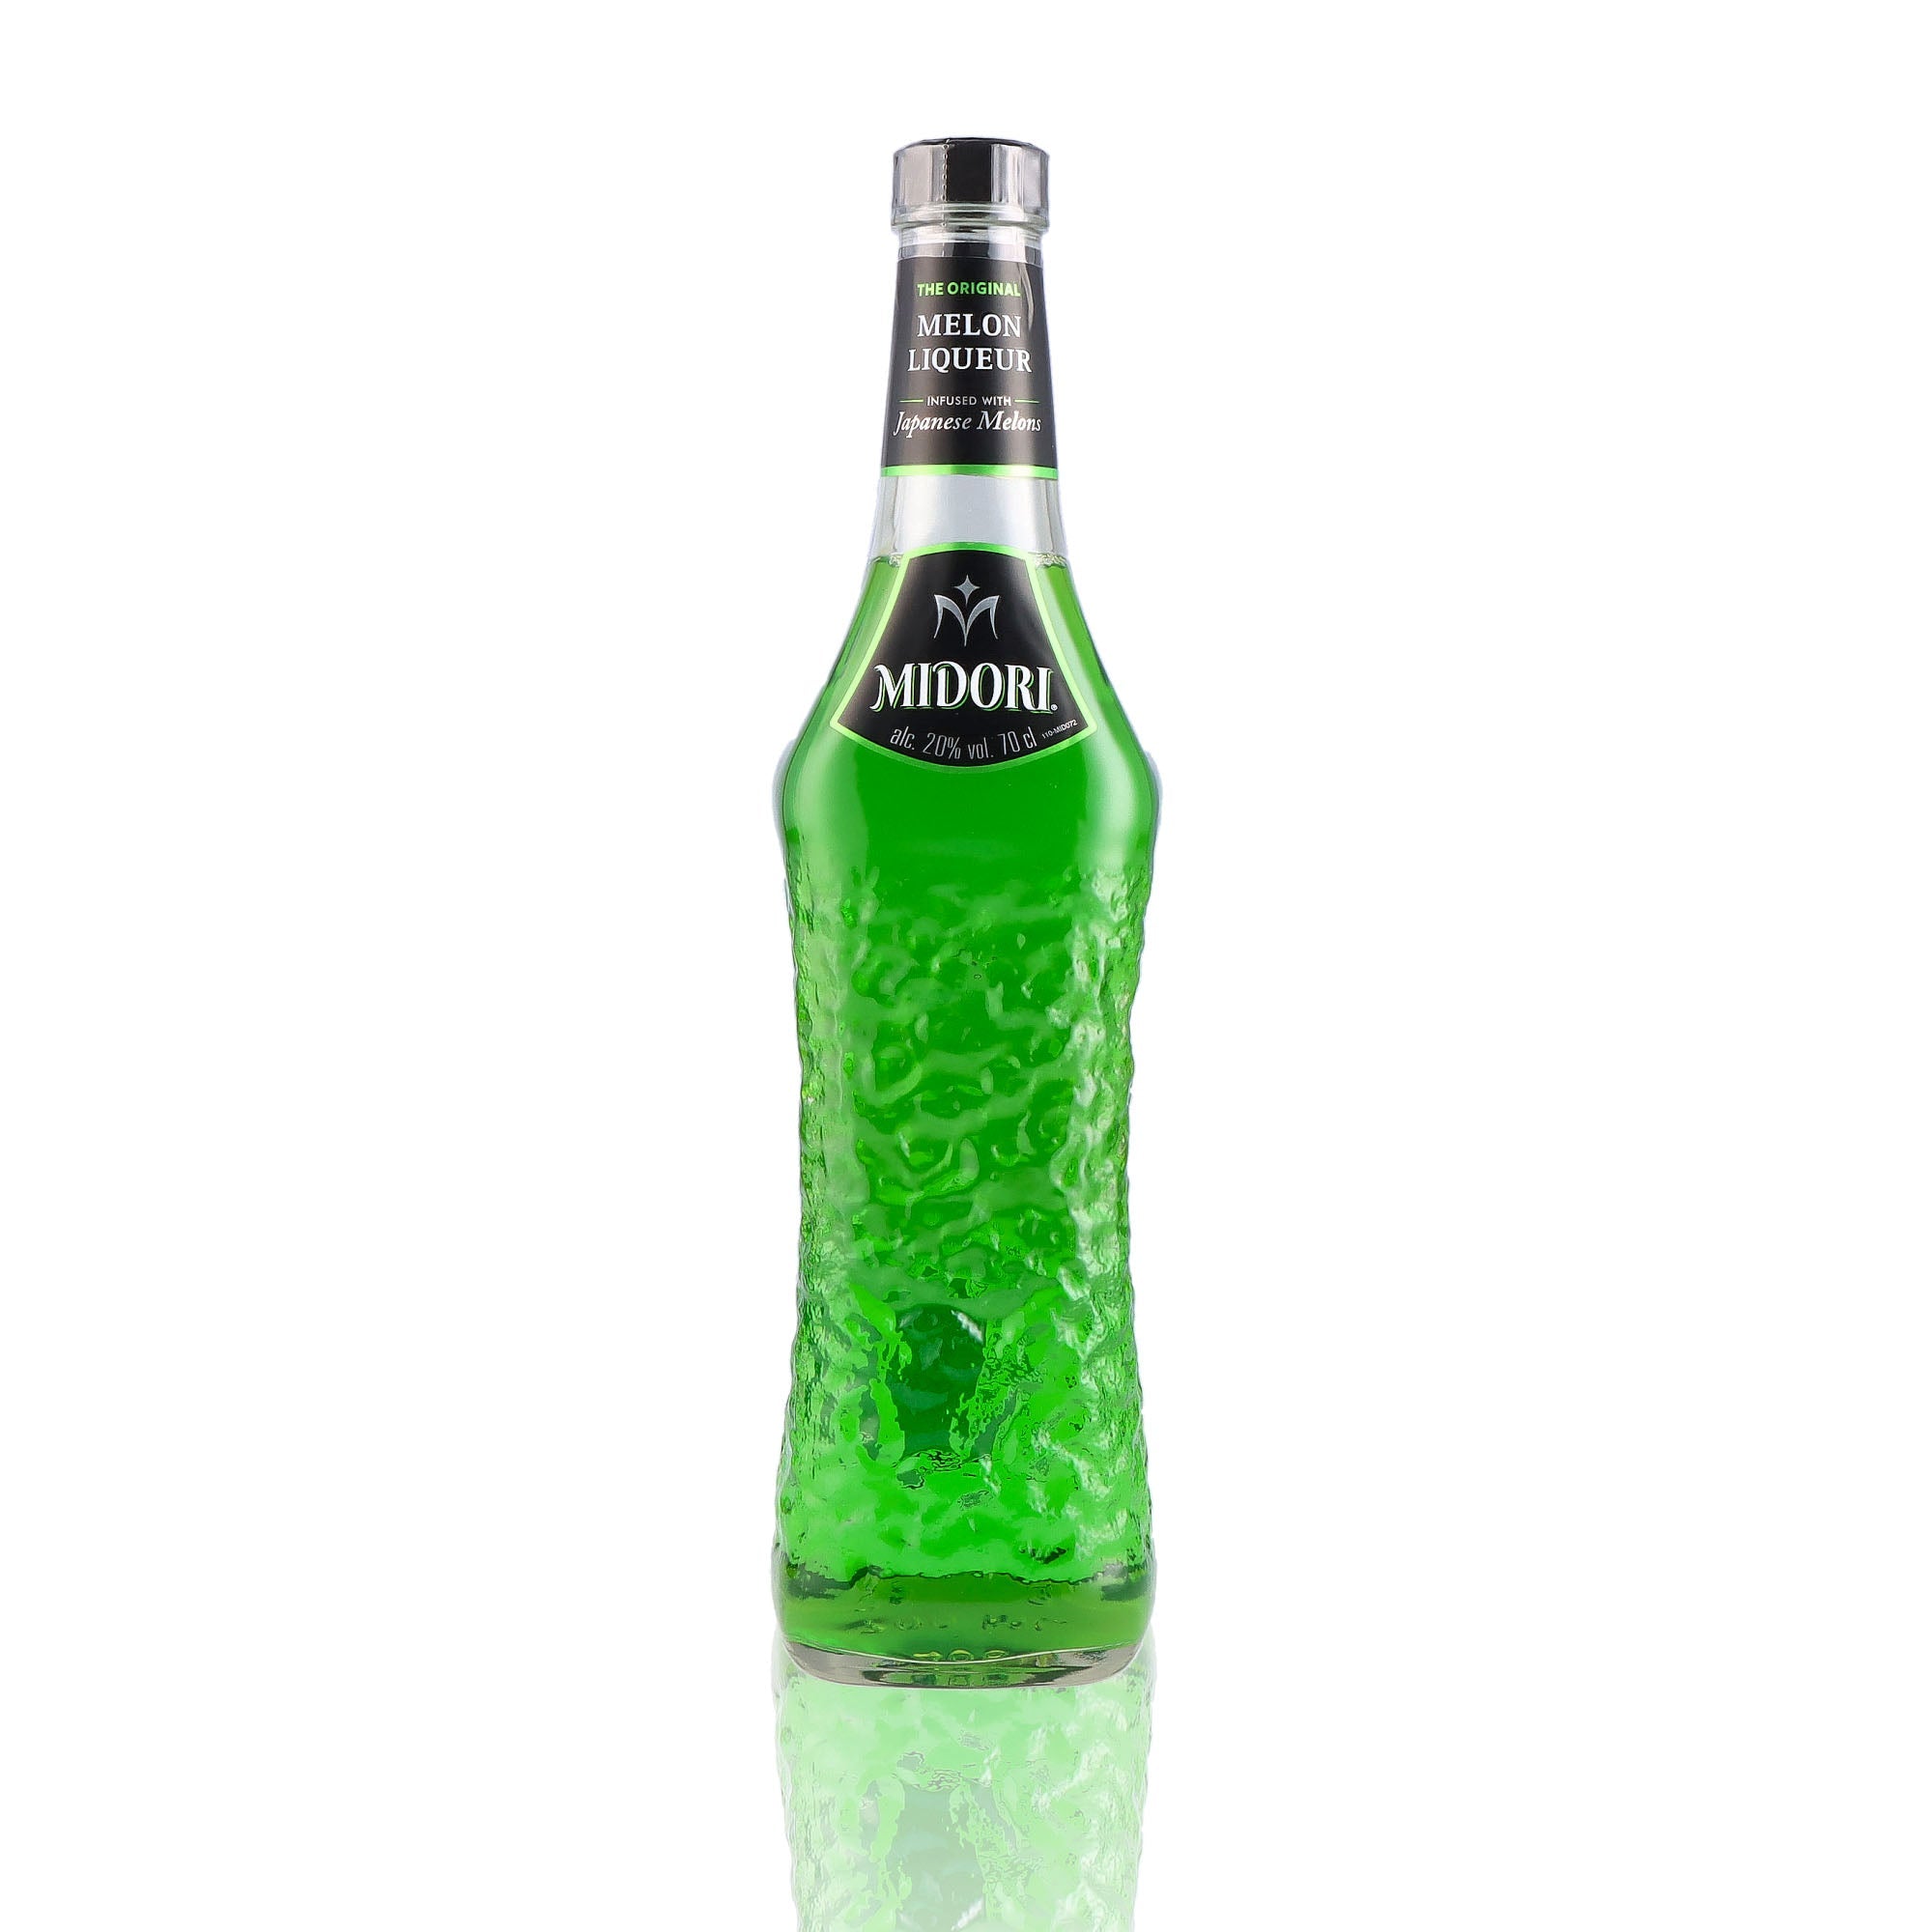 Une bouteille de Liqueur, de la marque Midori, nommée Melon.